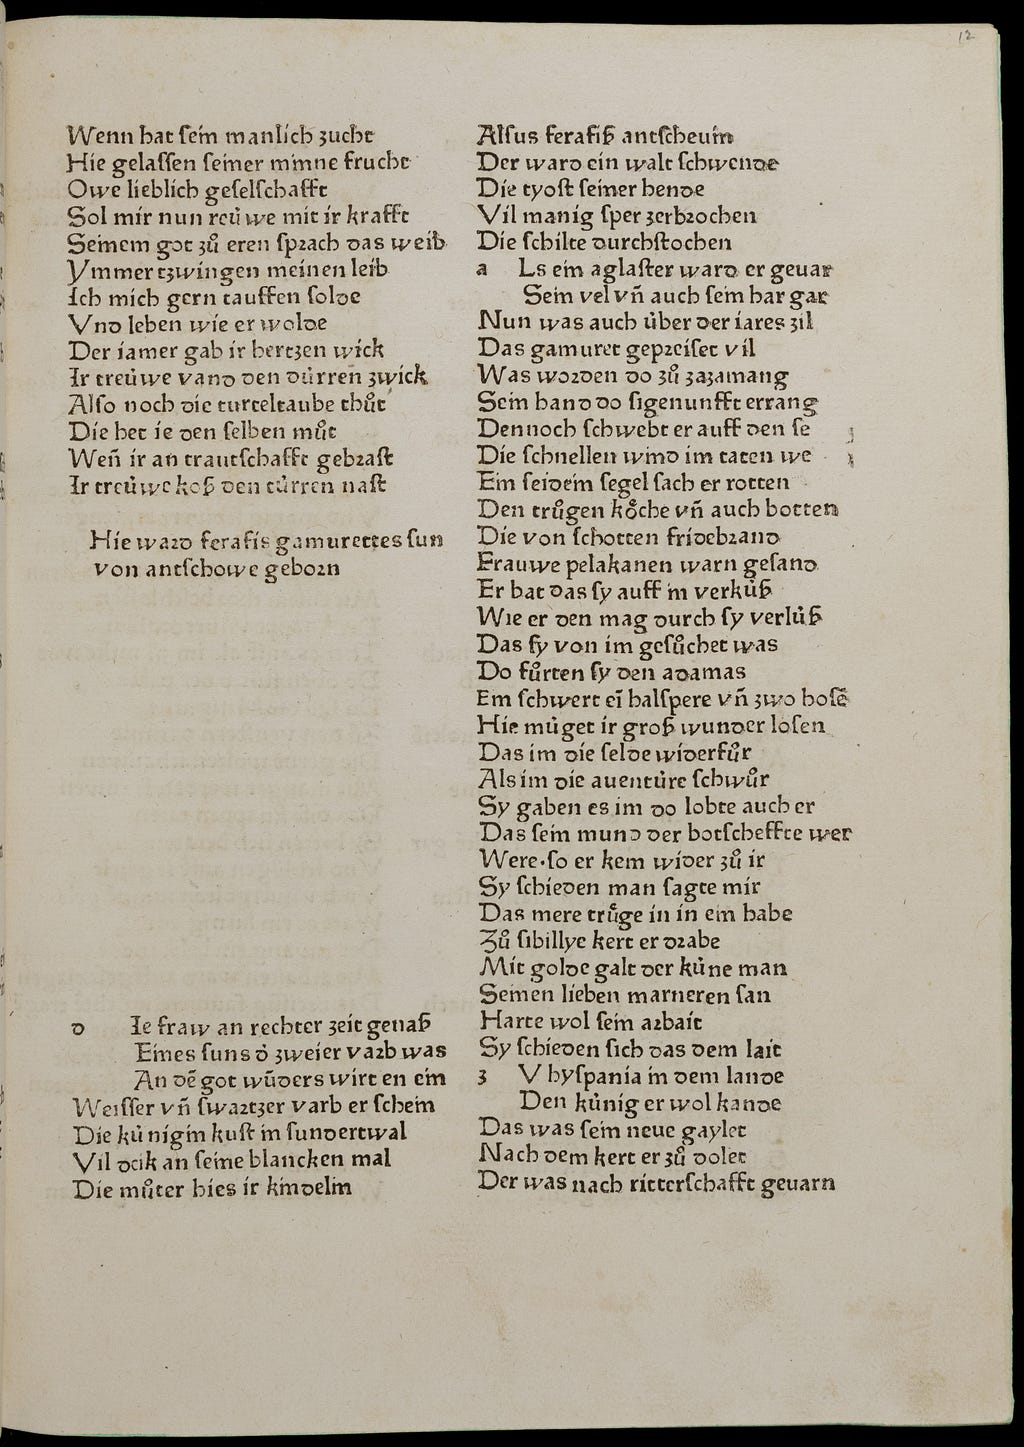 The folio of Parsival by Wolfram von Eschenbach.